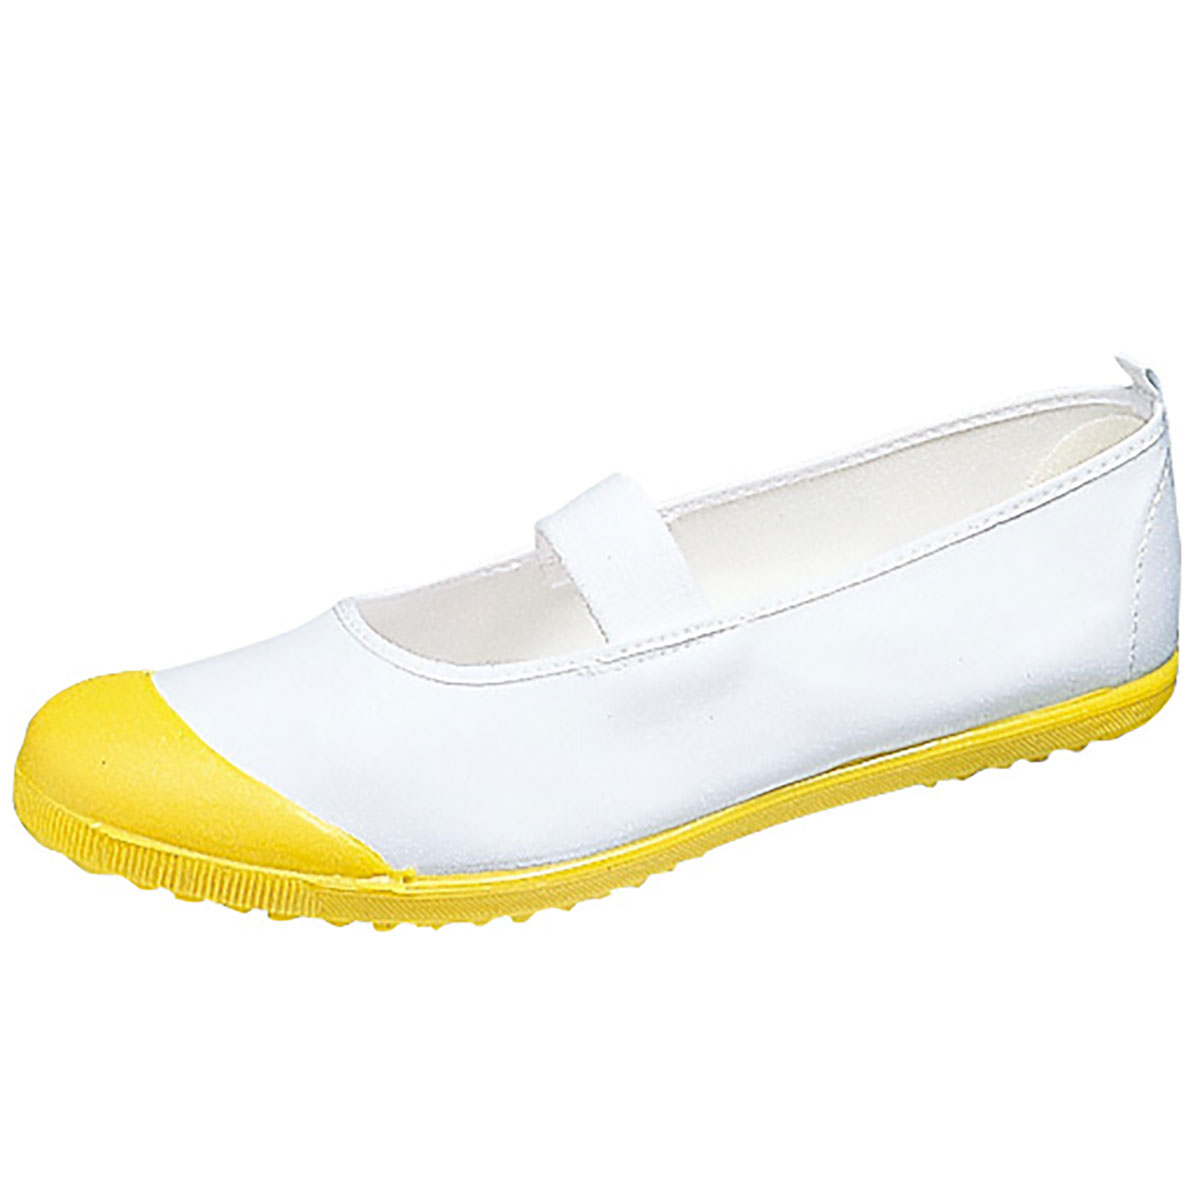 ☆4 ムーンスター 上靴 イエロー 黄色 日本製 抗菌 防臭 上履き 子供 大人 キッズ カラーバレー 大きいサイズ 小さいサイズ 子ども